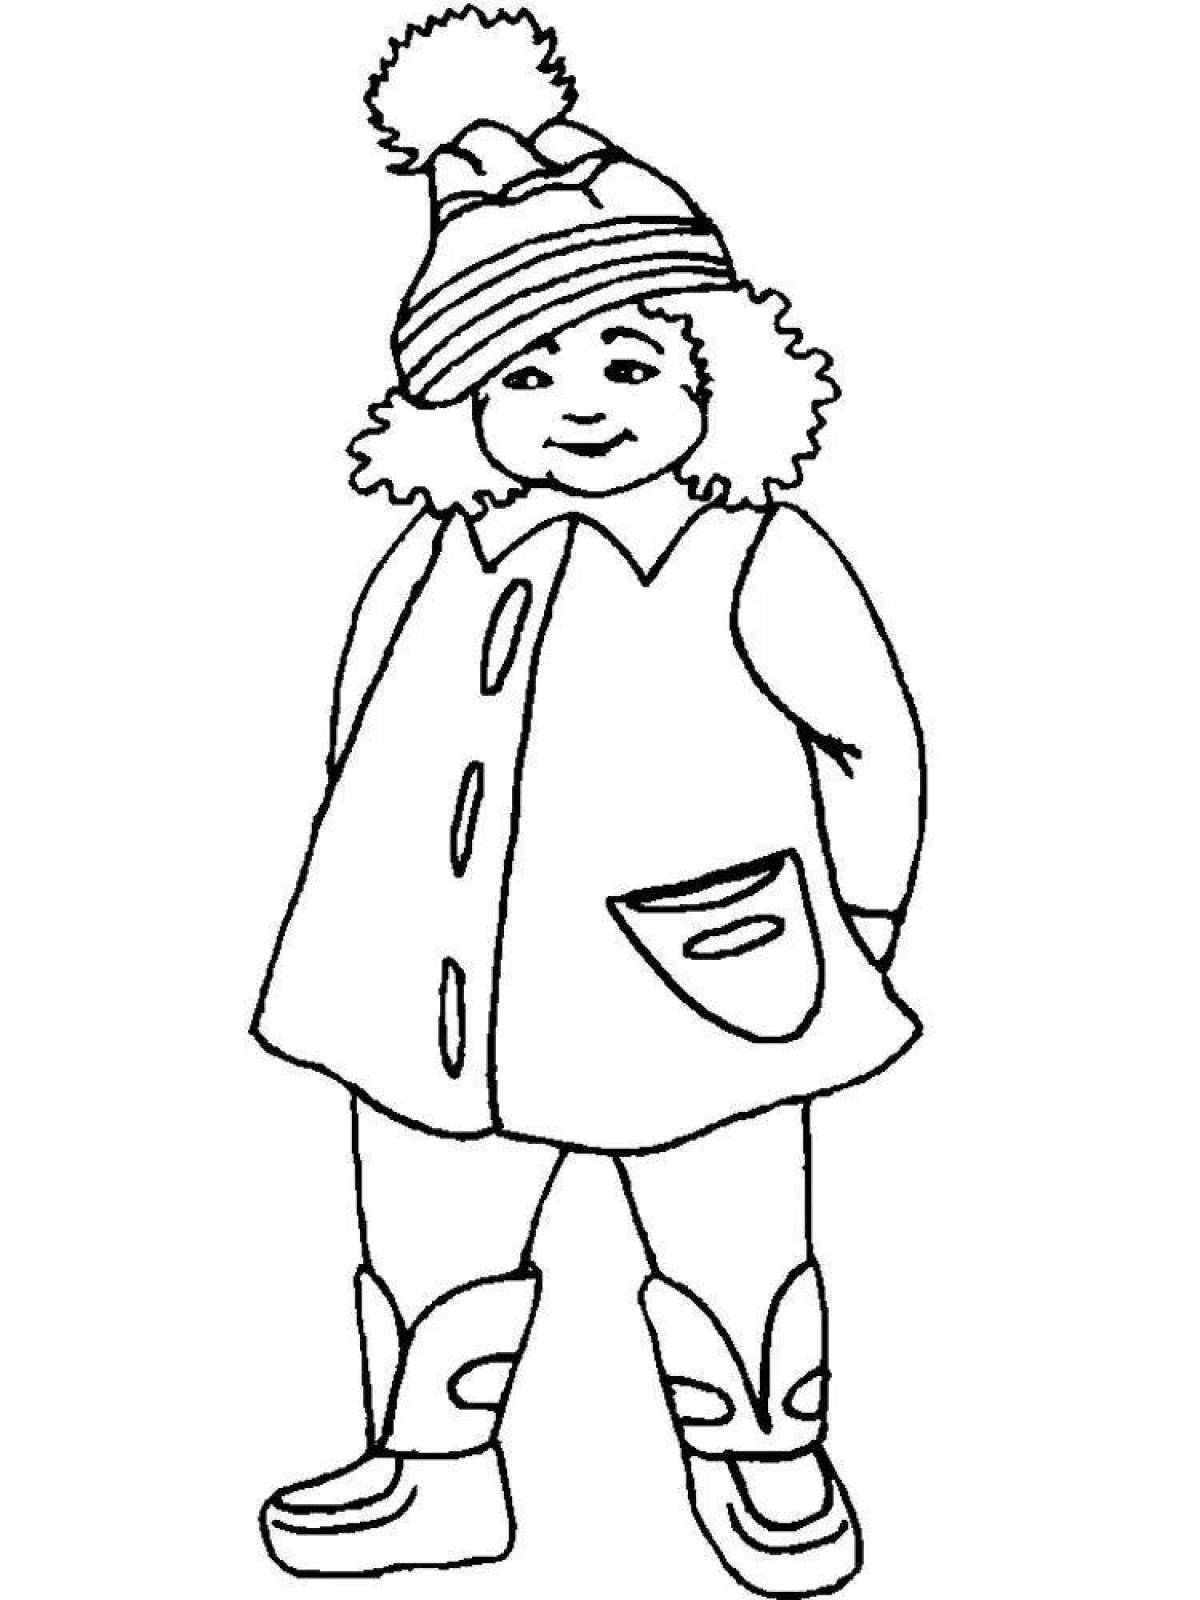 Большая раскраска для детей мальчик в зимней одежде